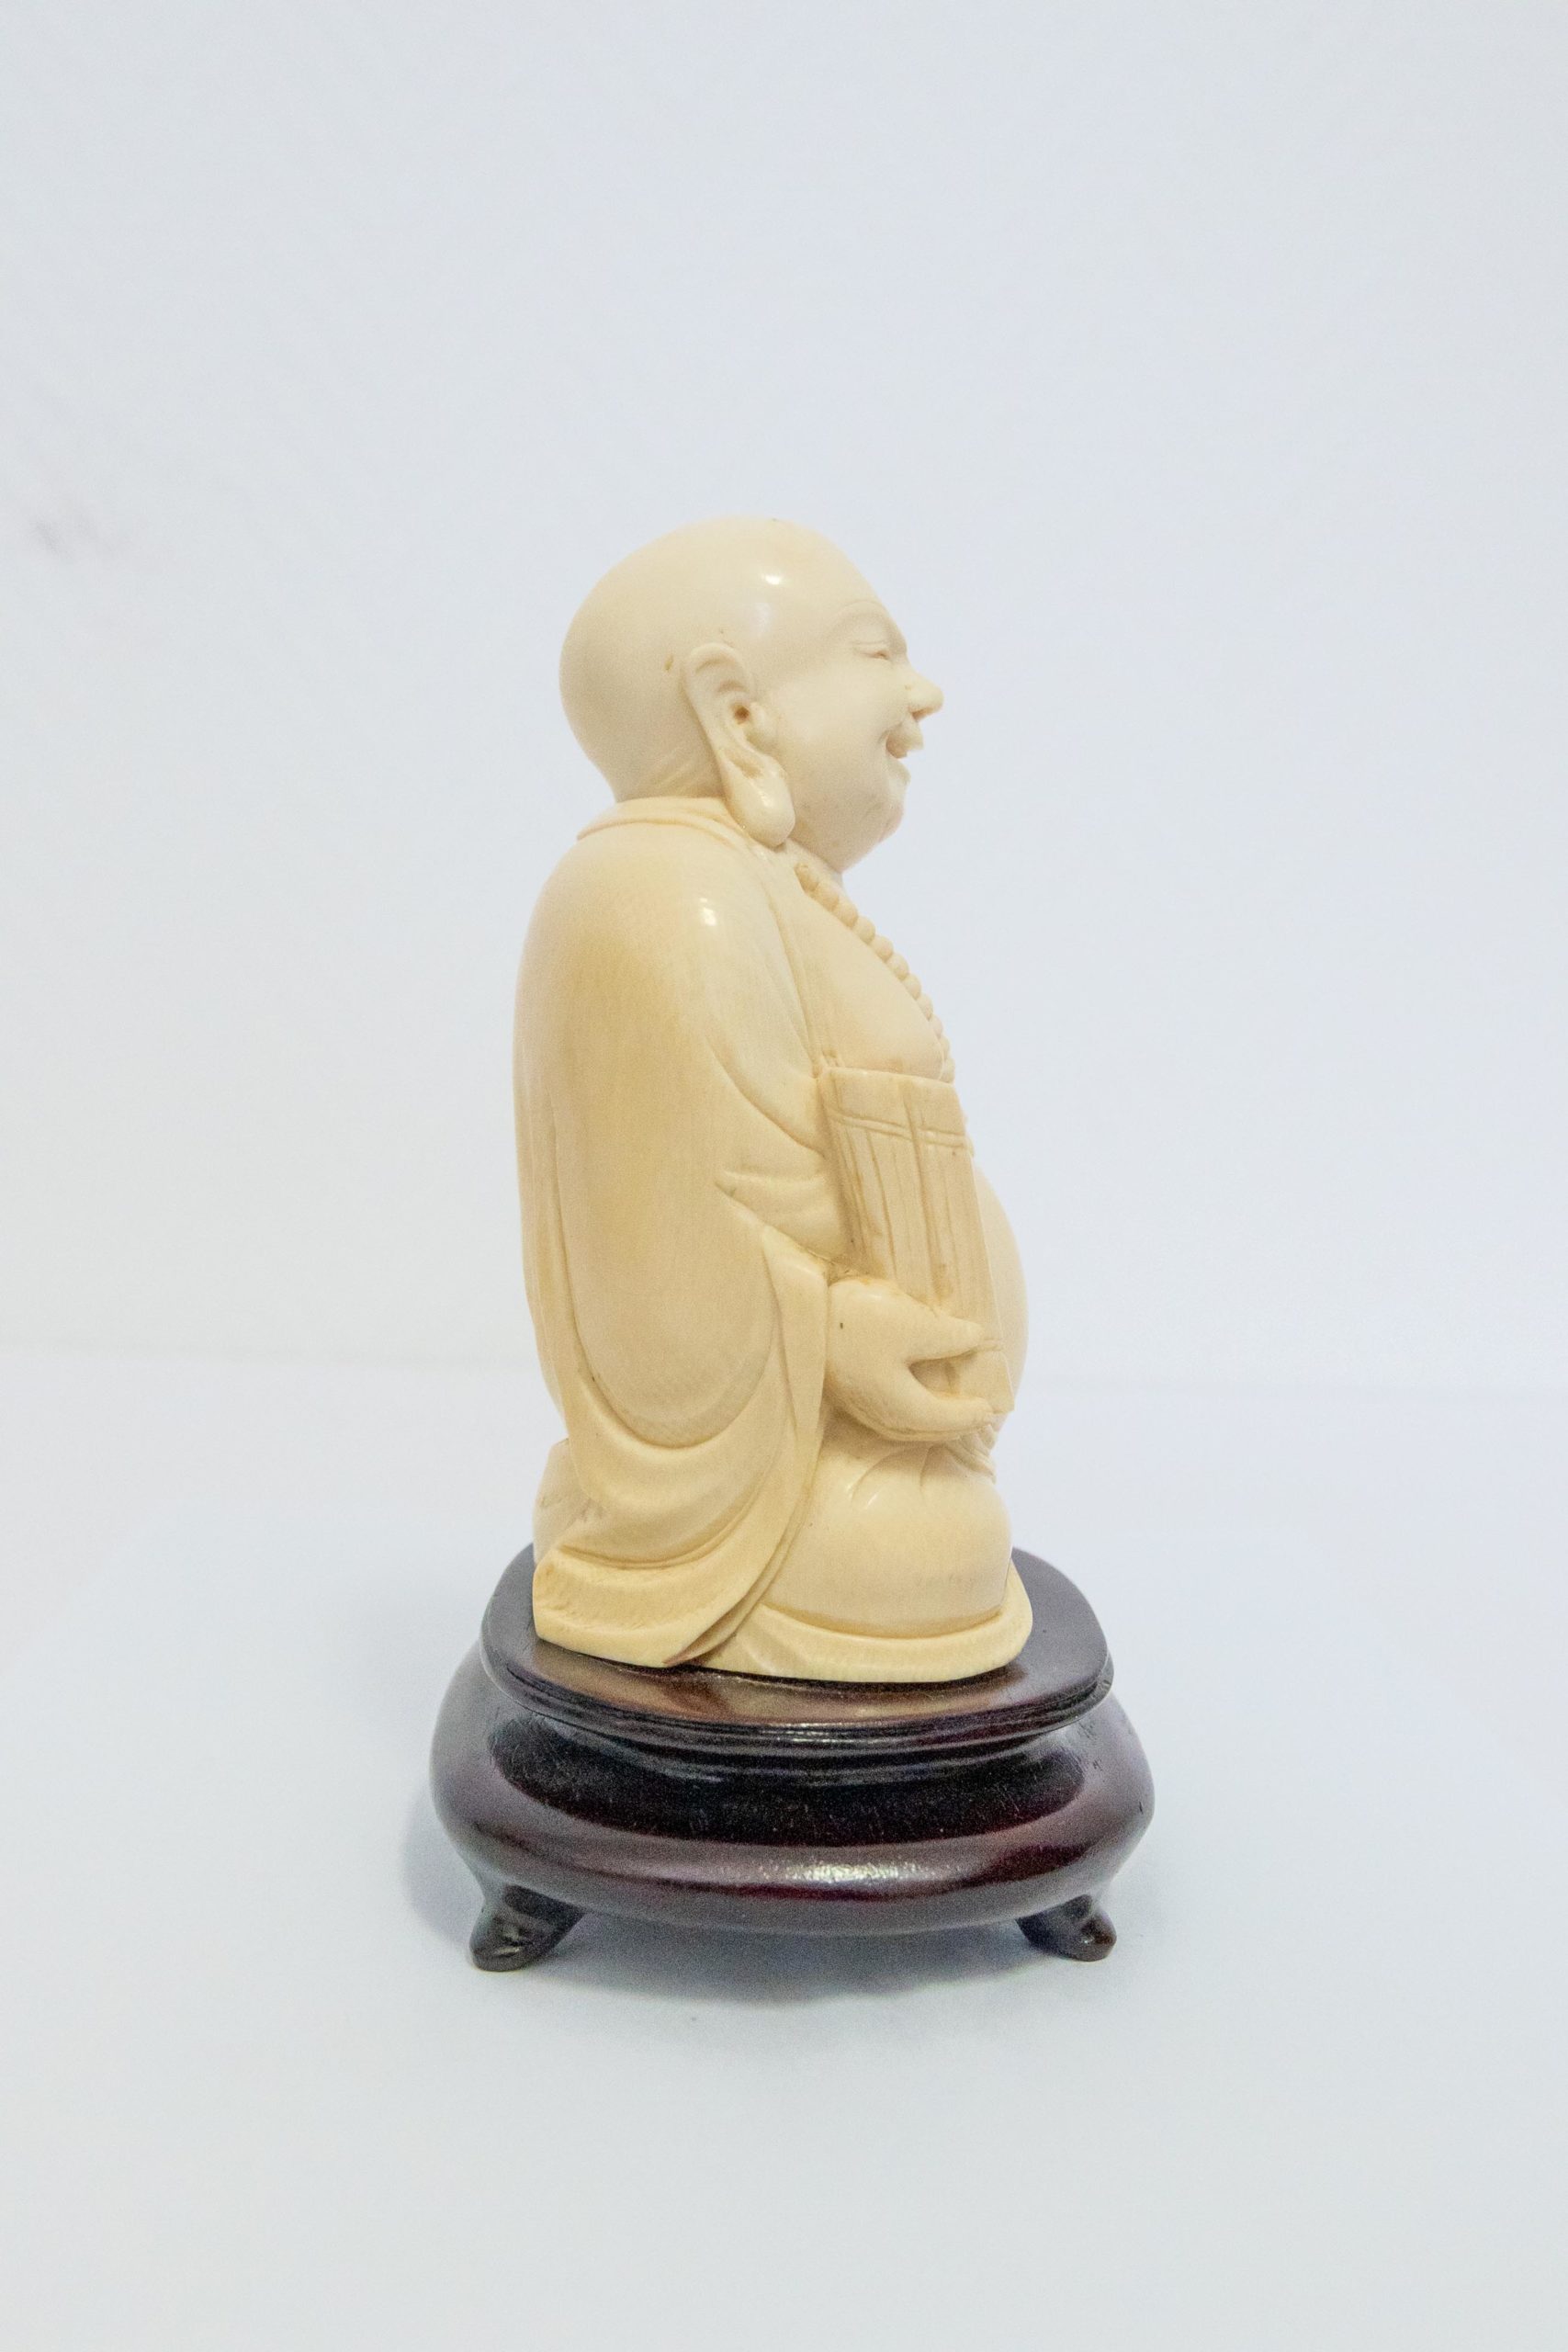 Sculpture-asiatique-bouddha-XIXe-1900-aurore-morisse-antiquaire-aurore-morisse-collection-décoration-antiquités-expertise-affaire-conclue12